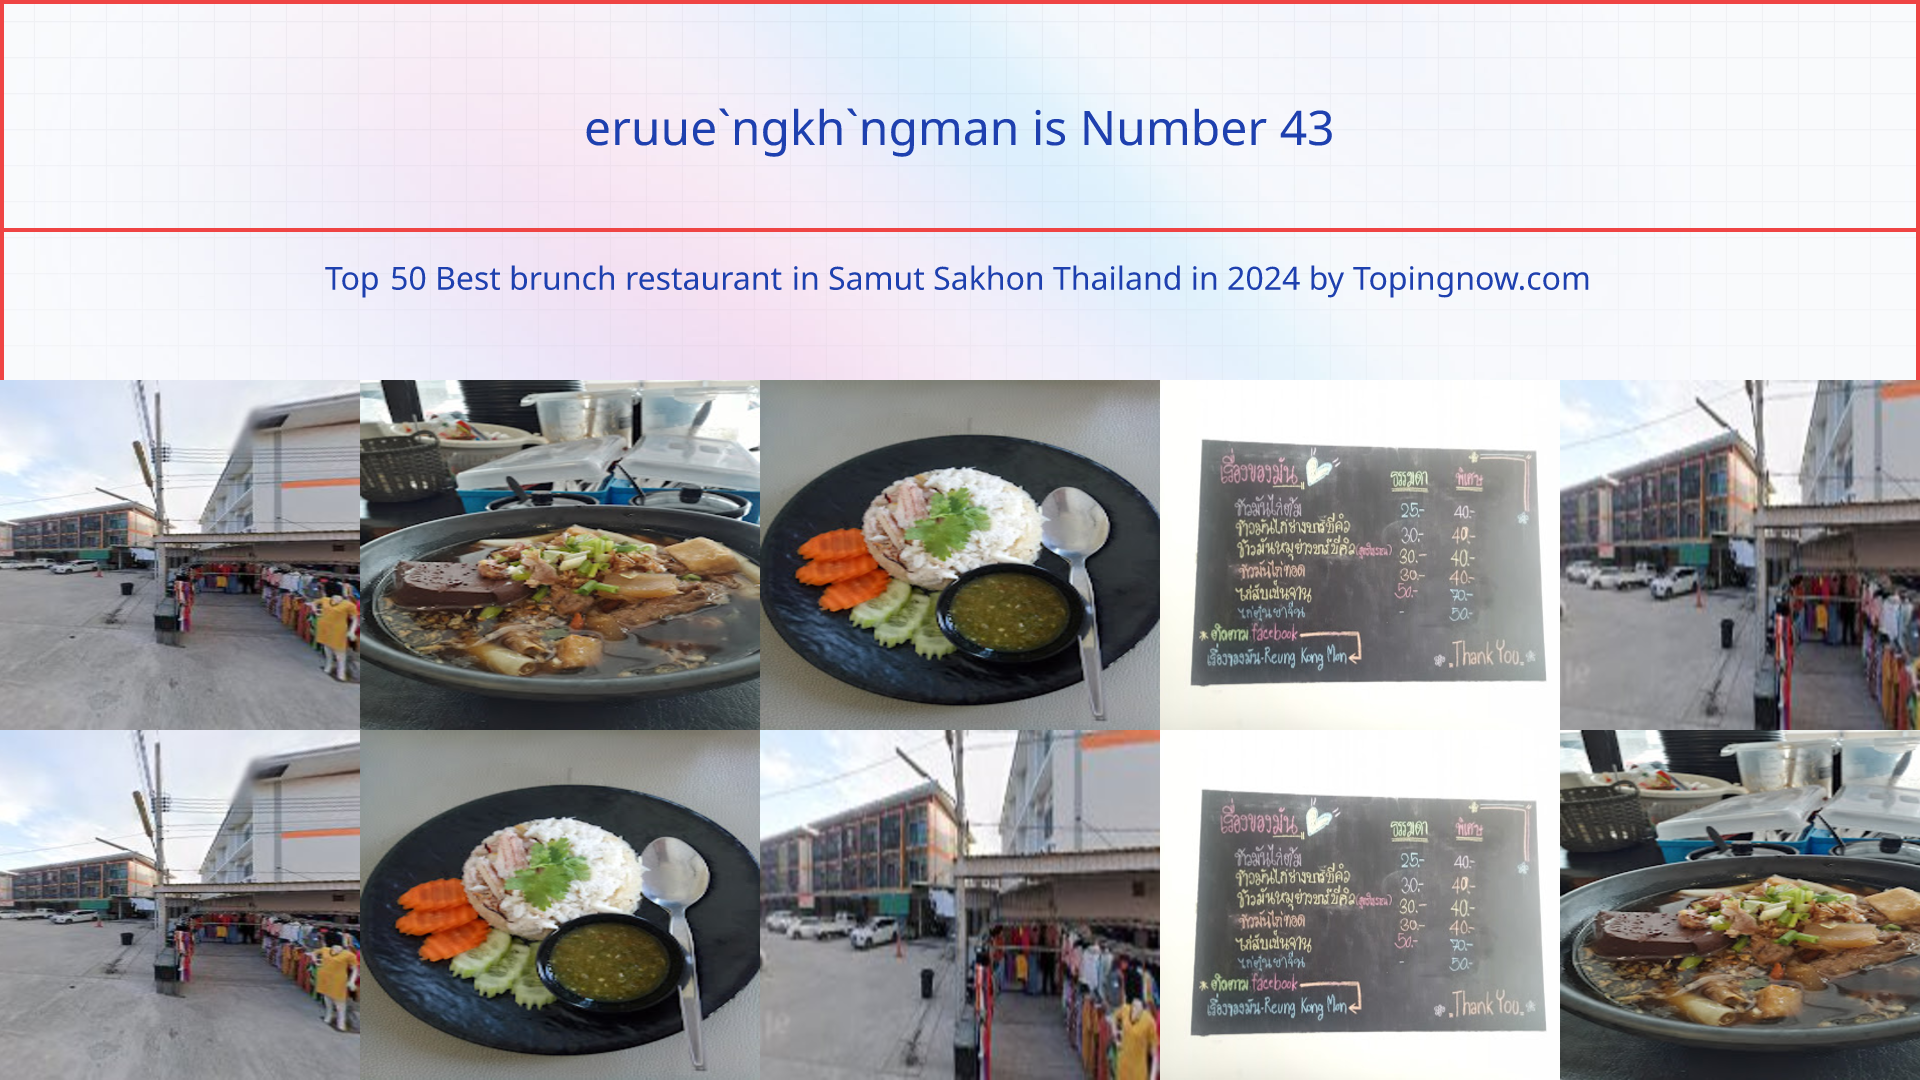 eruue`ngkh`ngman: Top 50 Best brunch restaurant in Samut Sakhon Thailand in 2024